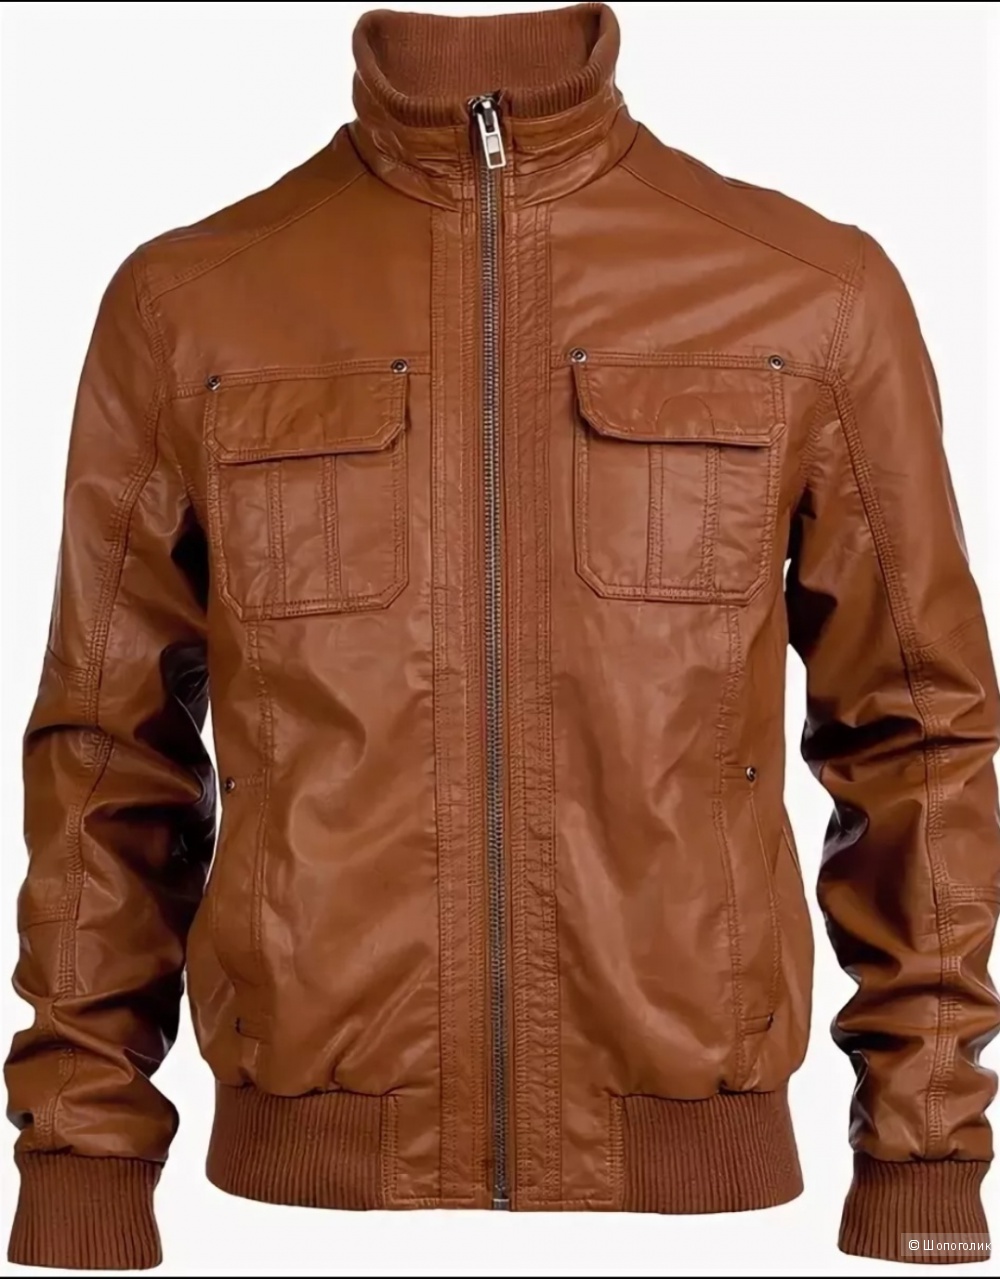 Куртка Zara размер L 48-50 российский размер